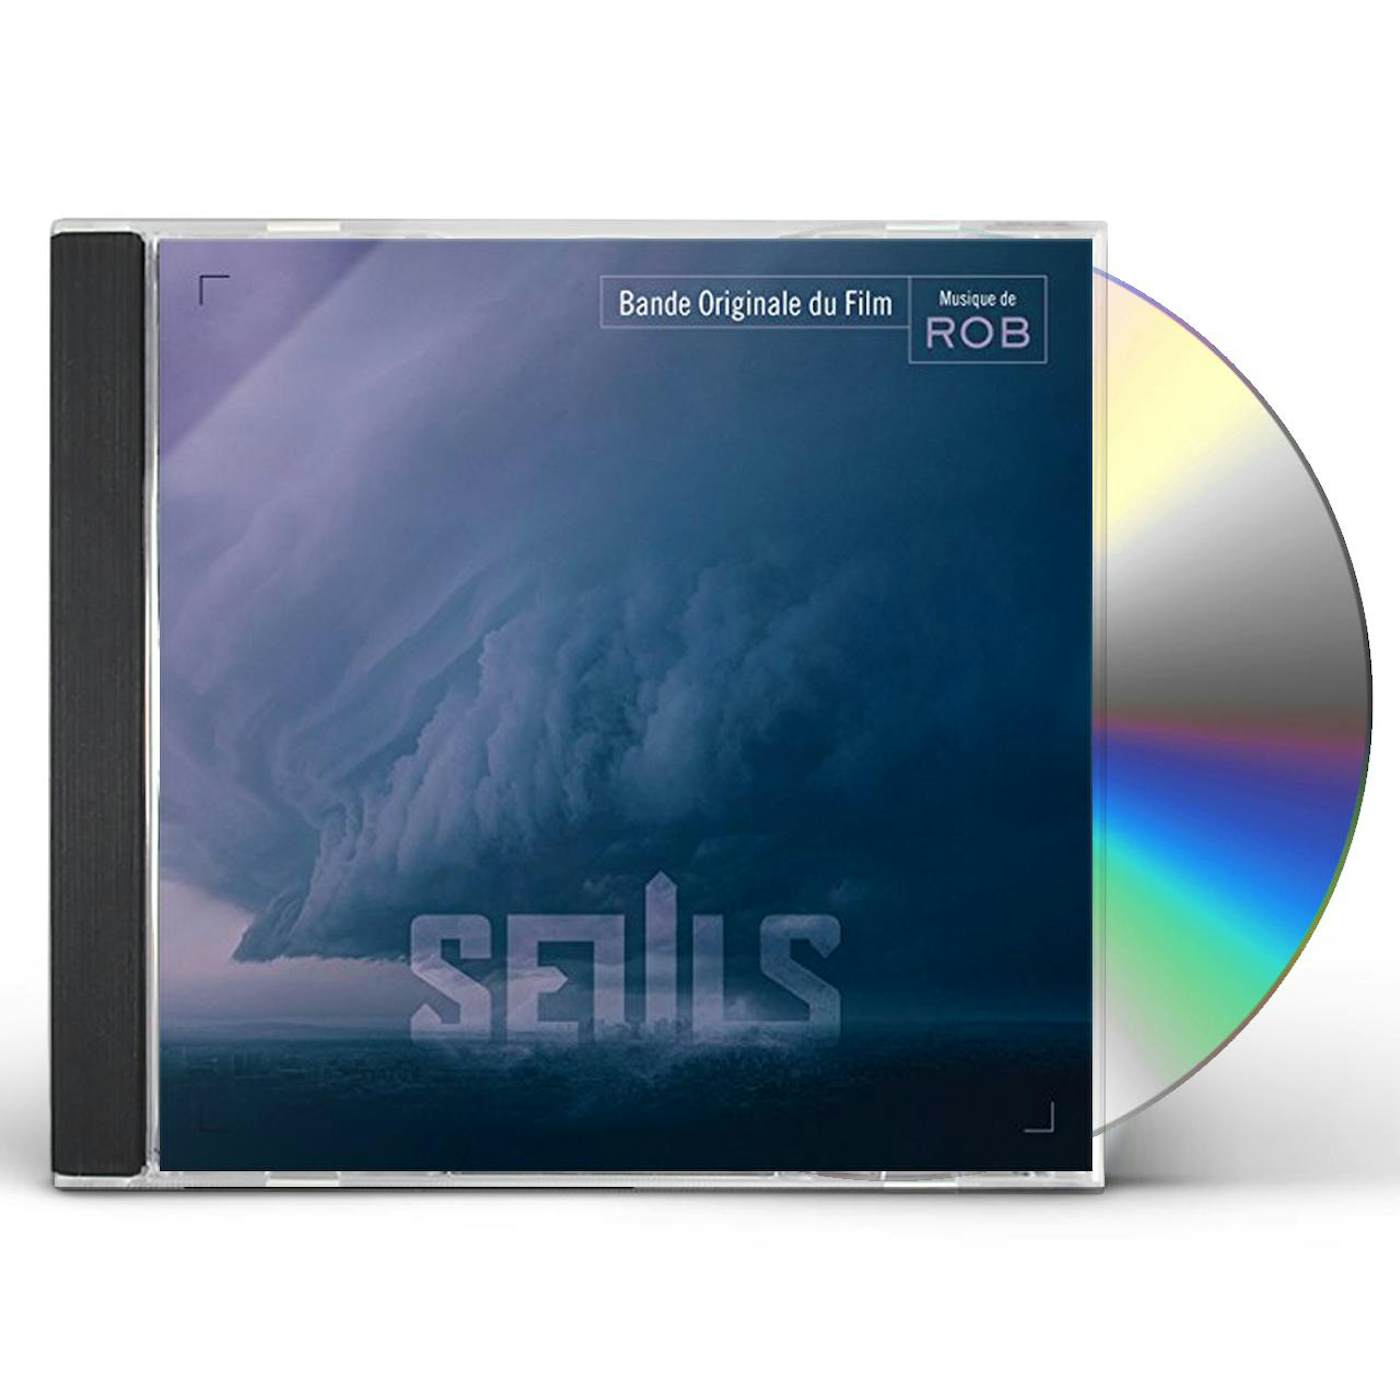 Rob SEULS (ALONE) / Original Soundtrack CD